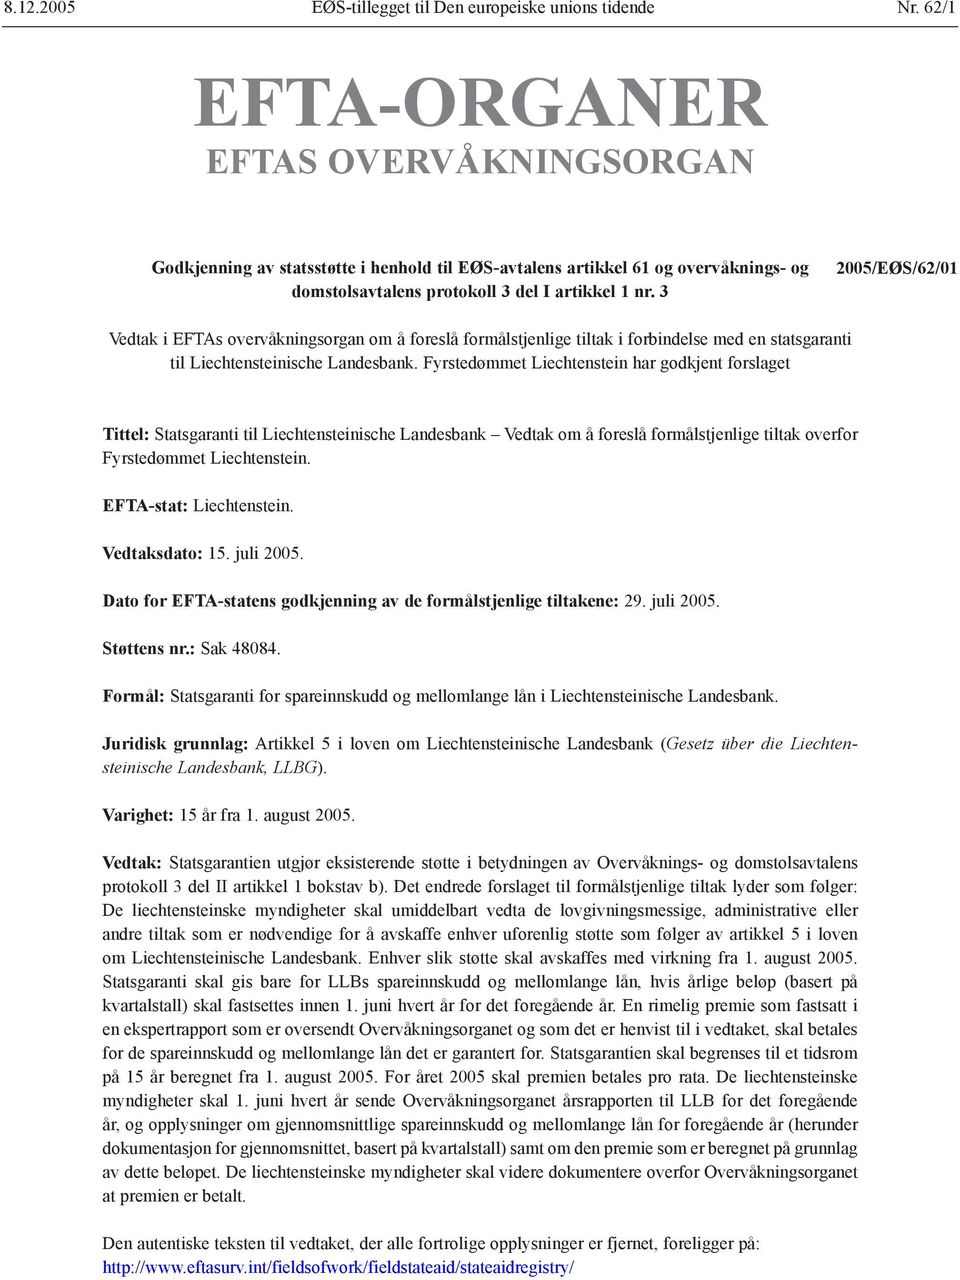 3 2005/EØS/62/01 Vedtak i EFTAs overvåkningsorgan om å foreslå formålstjenlige tiltak i forbindelse med en statsgaranti til Liechtensteinische Landesbank.